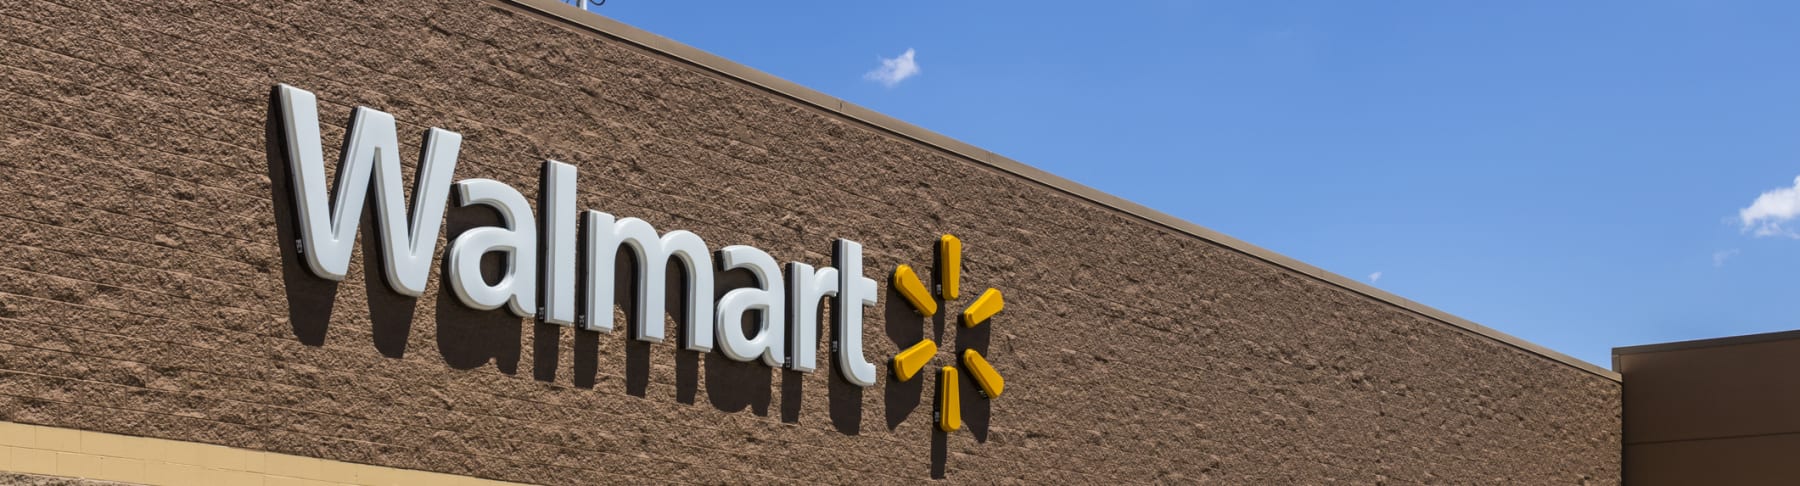 Walmart store sign shown in daytime.